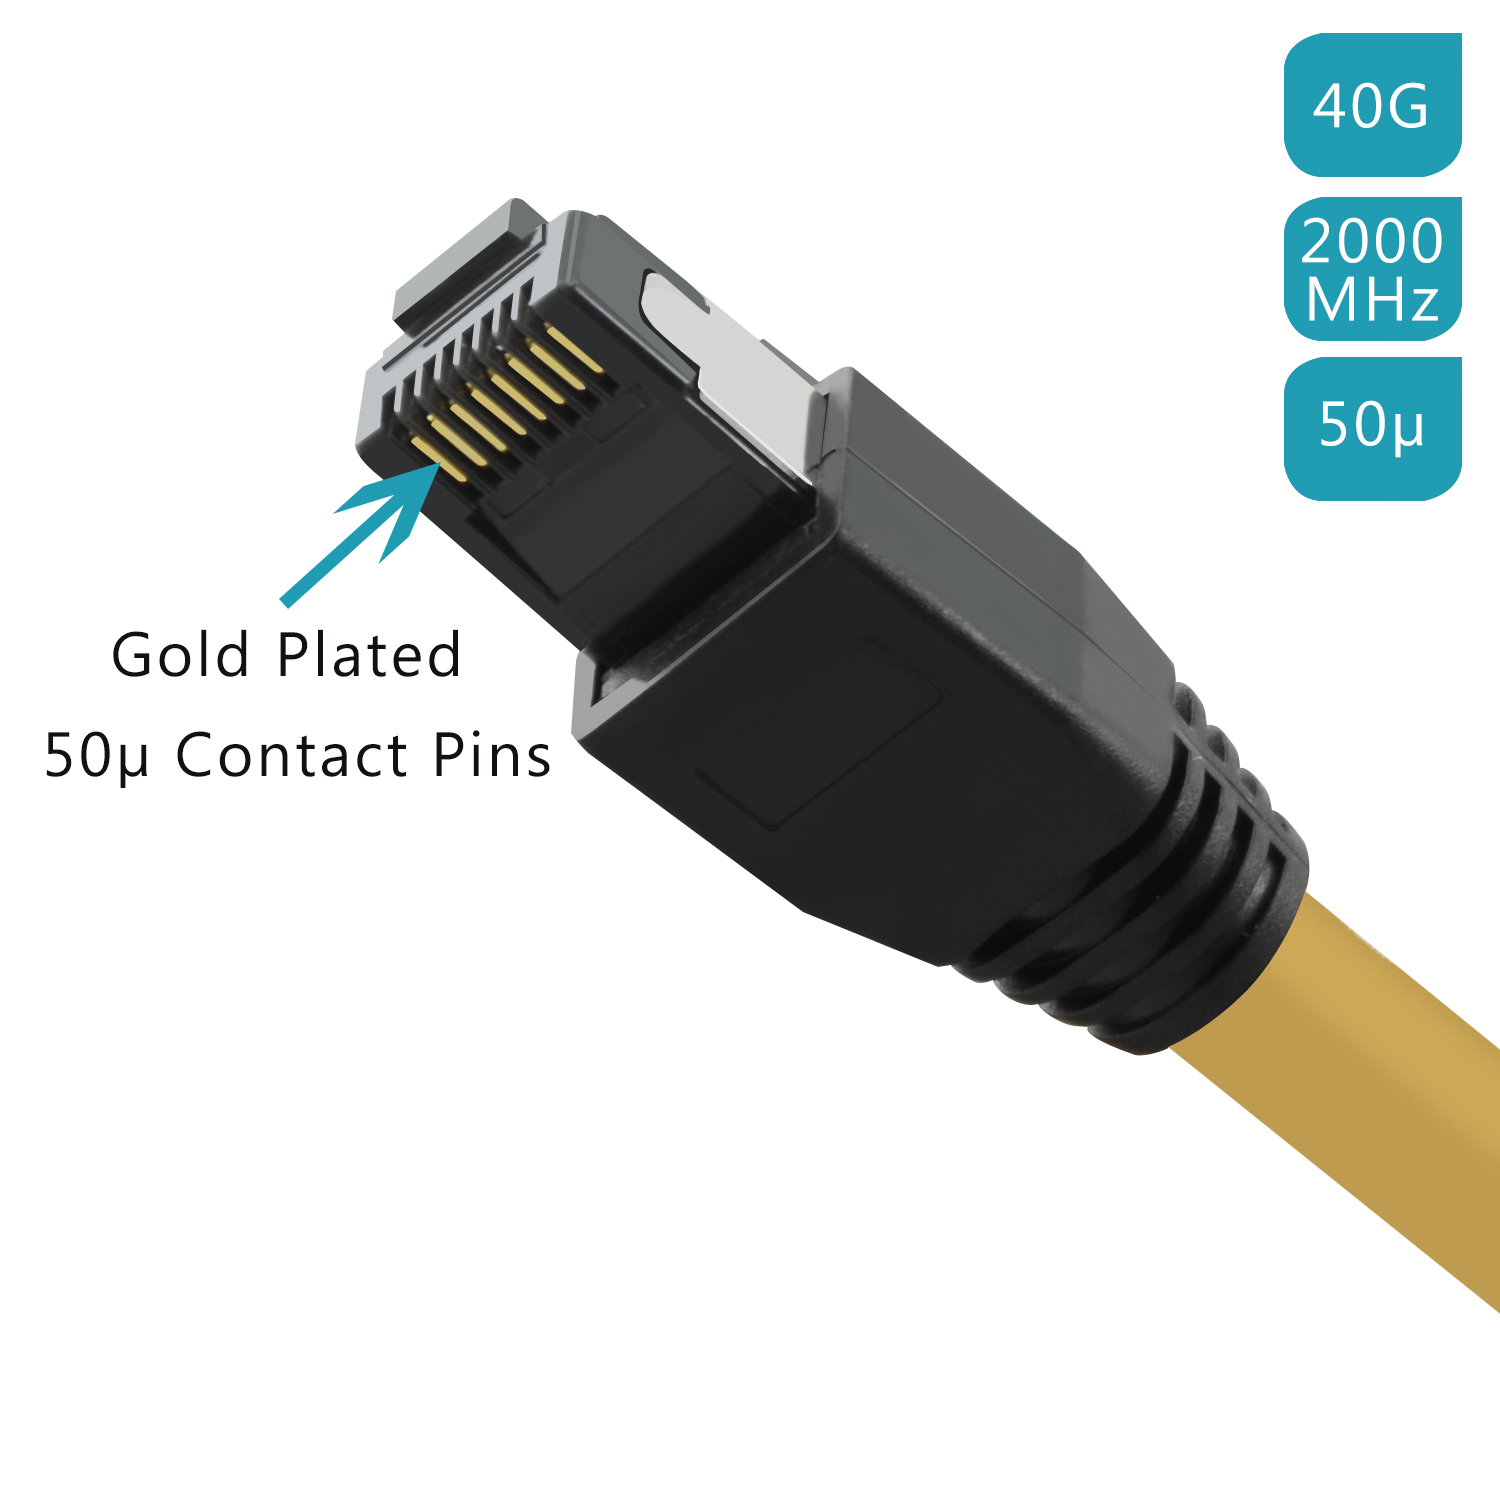 Patchkabel 3m TPFNET GBit, 3 Netzwerkkabel, Netzwerkkabel 40 gelb, / m S/FTP